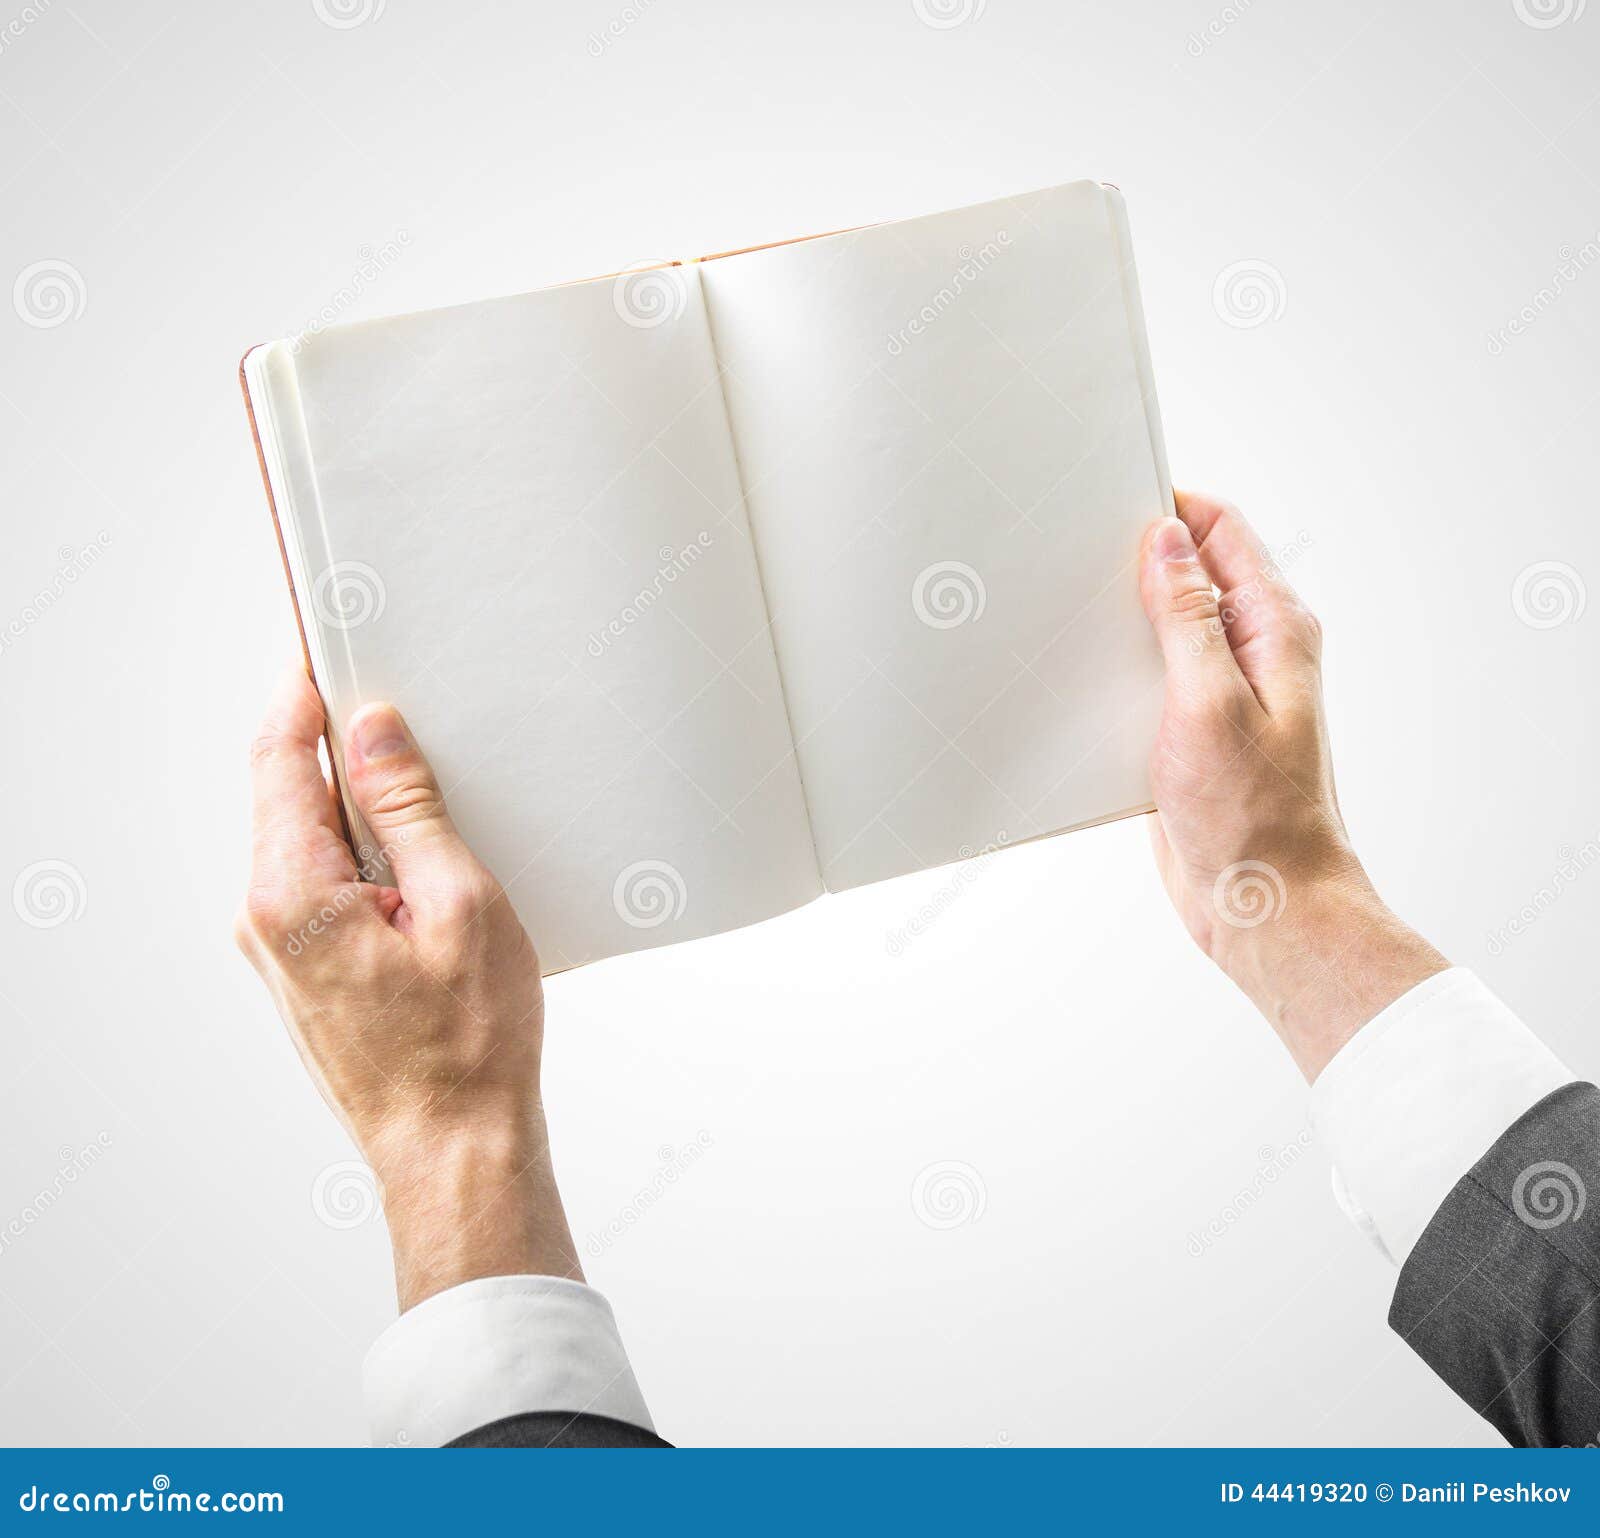 Держать открытую книгу. Человек держит книгу в руках. Книга в руках. Открытая книга в руках. Книжка открытая в руках.